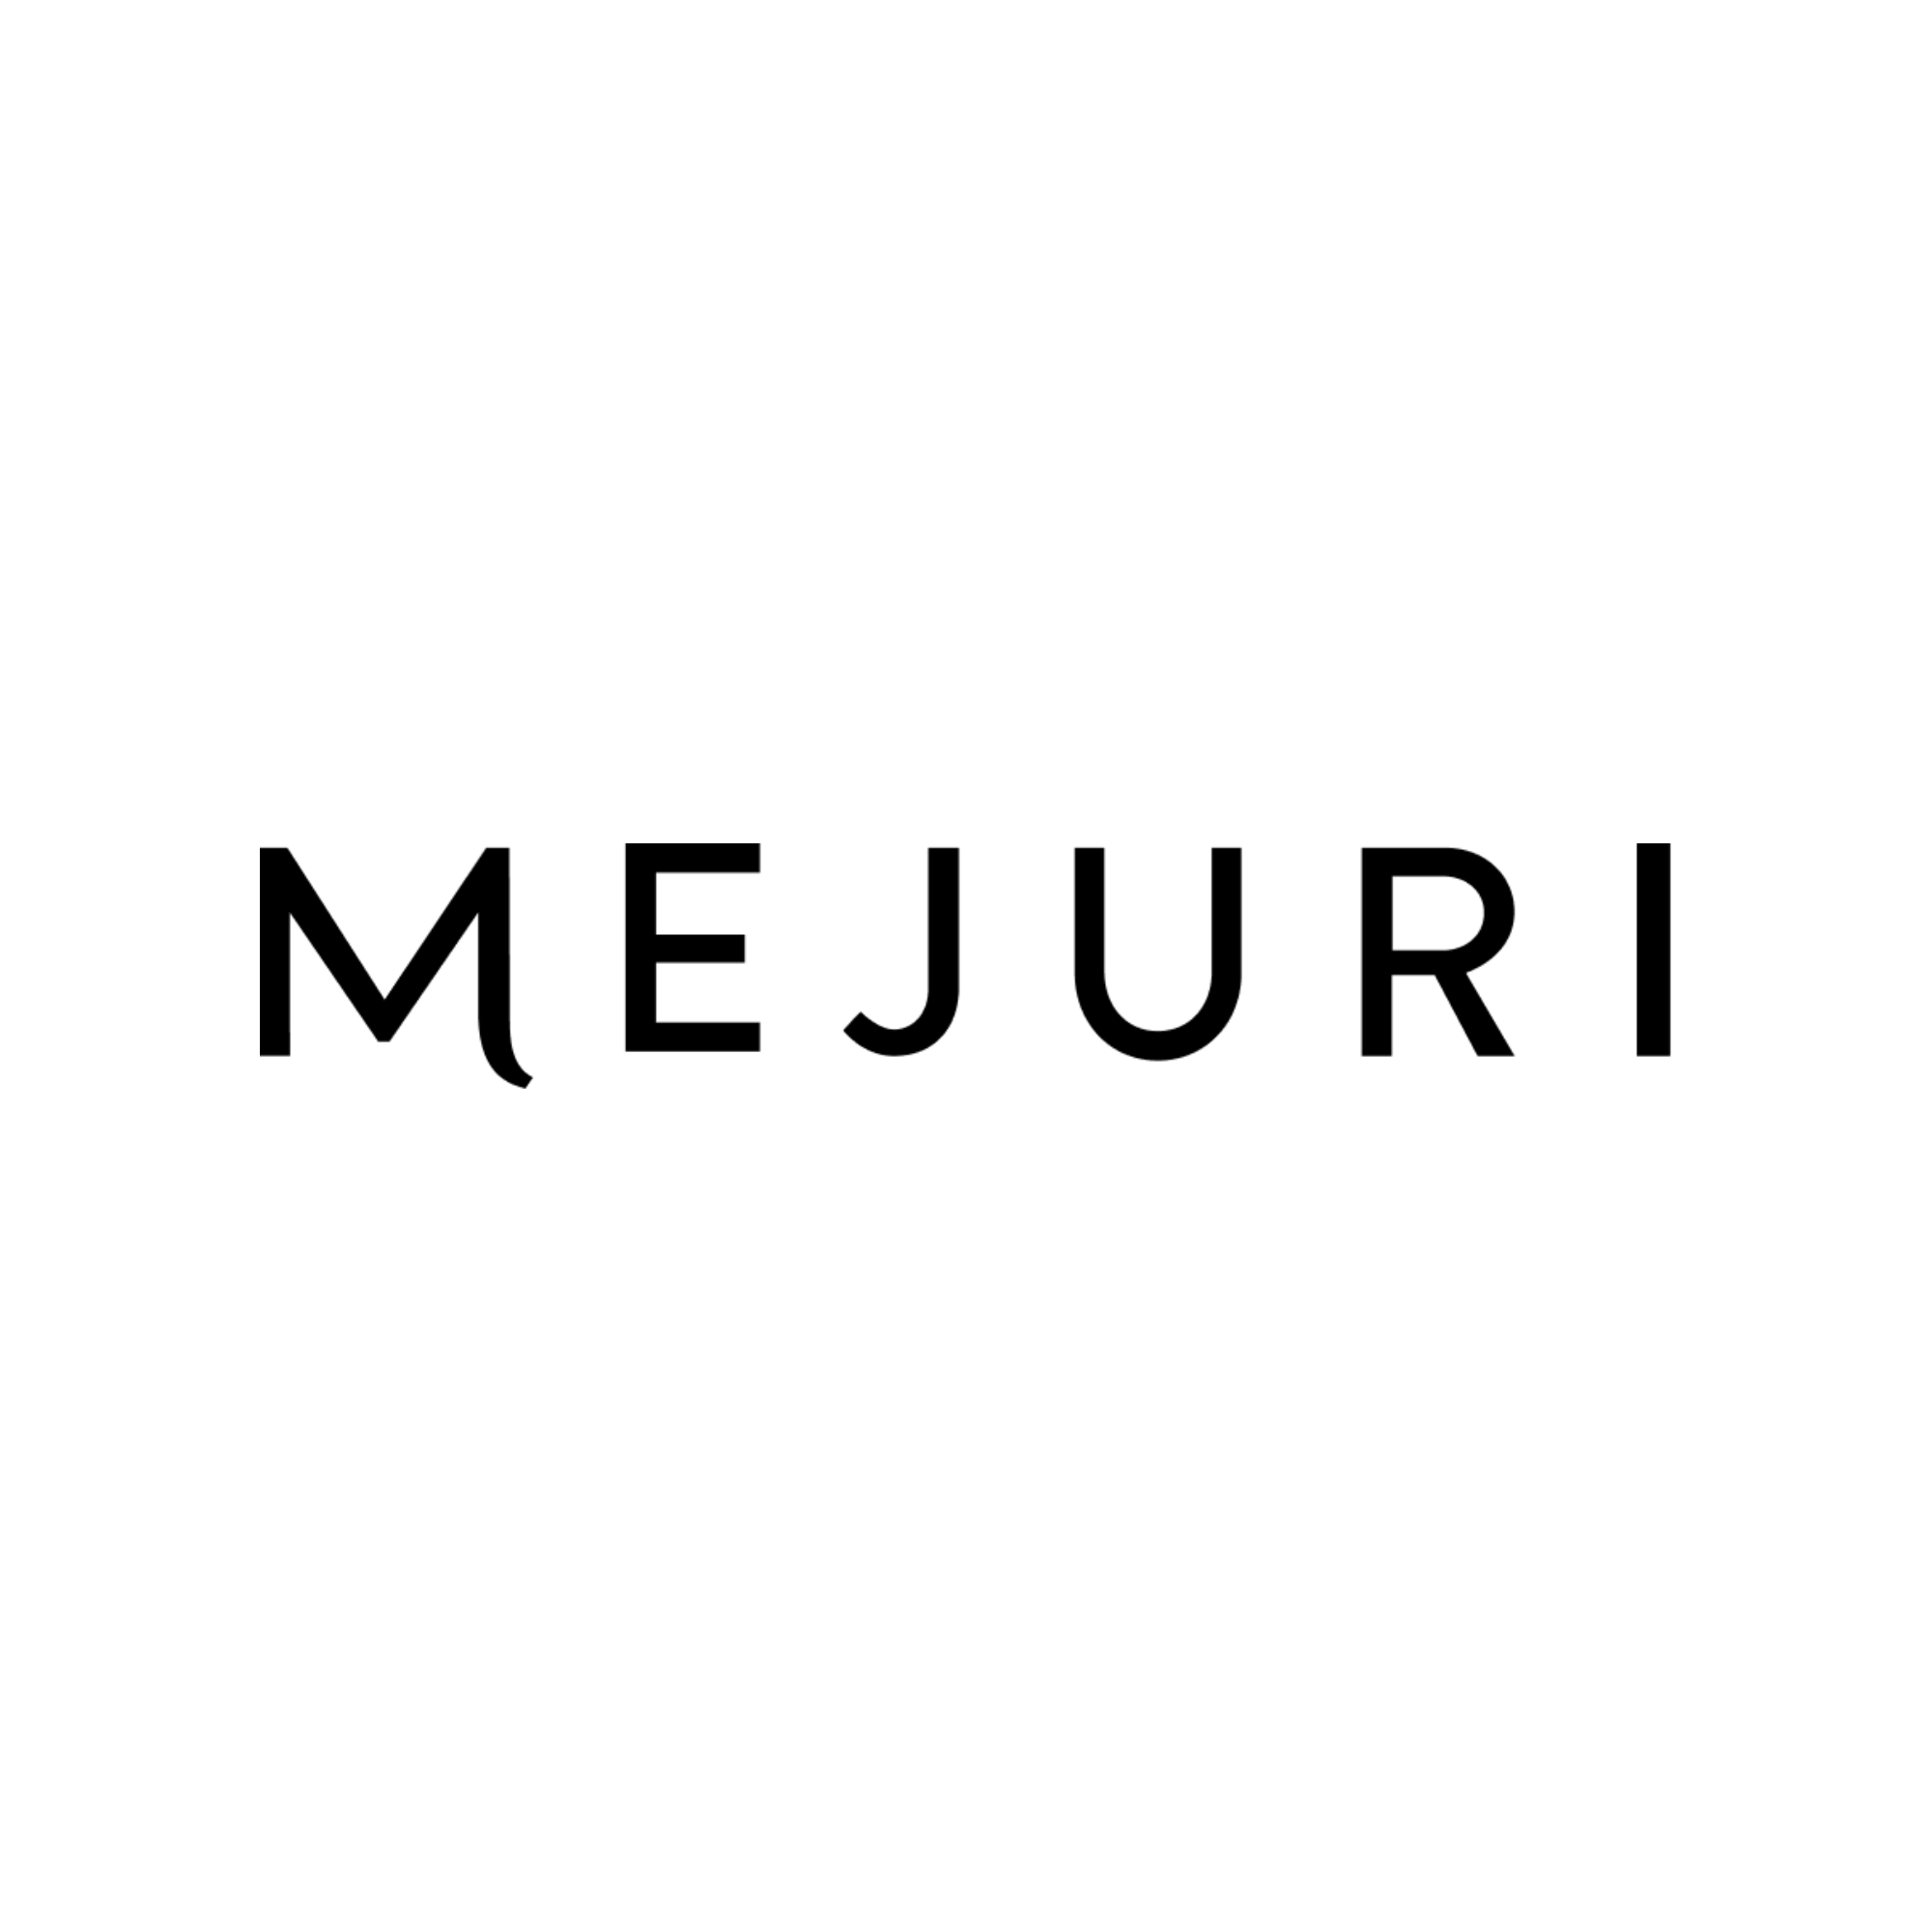 Mejuri – Now Open logo